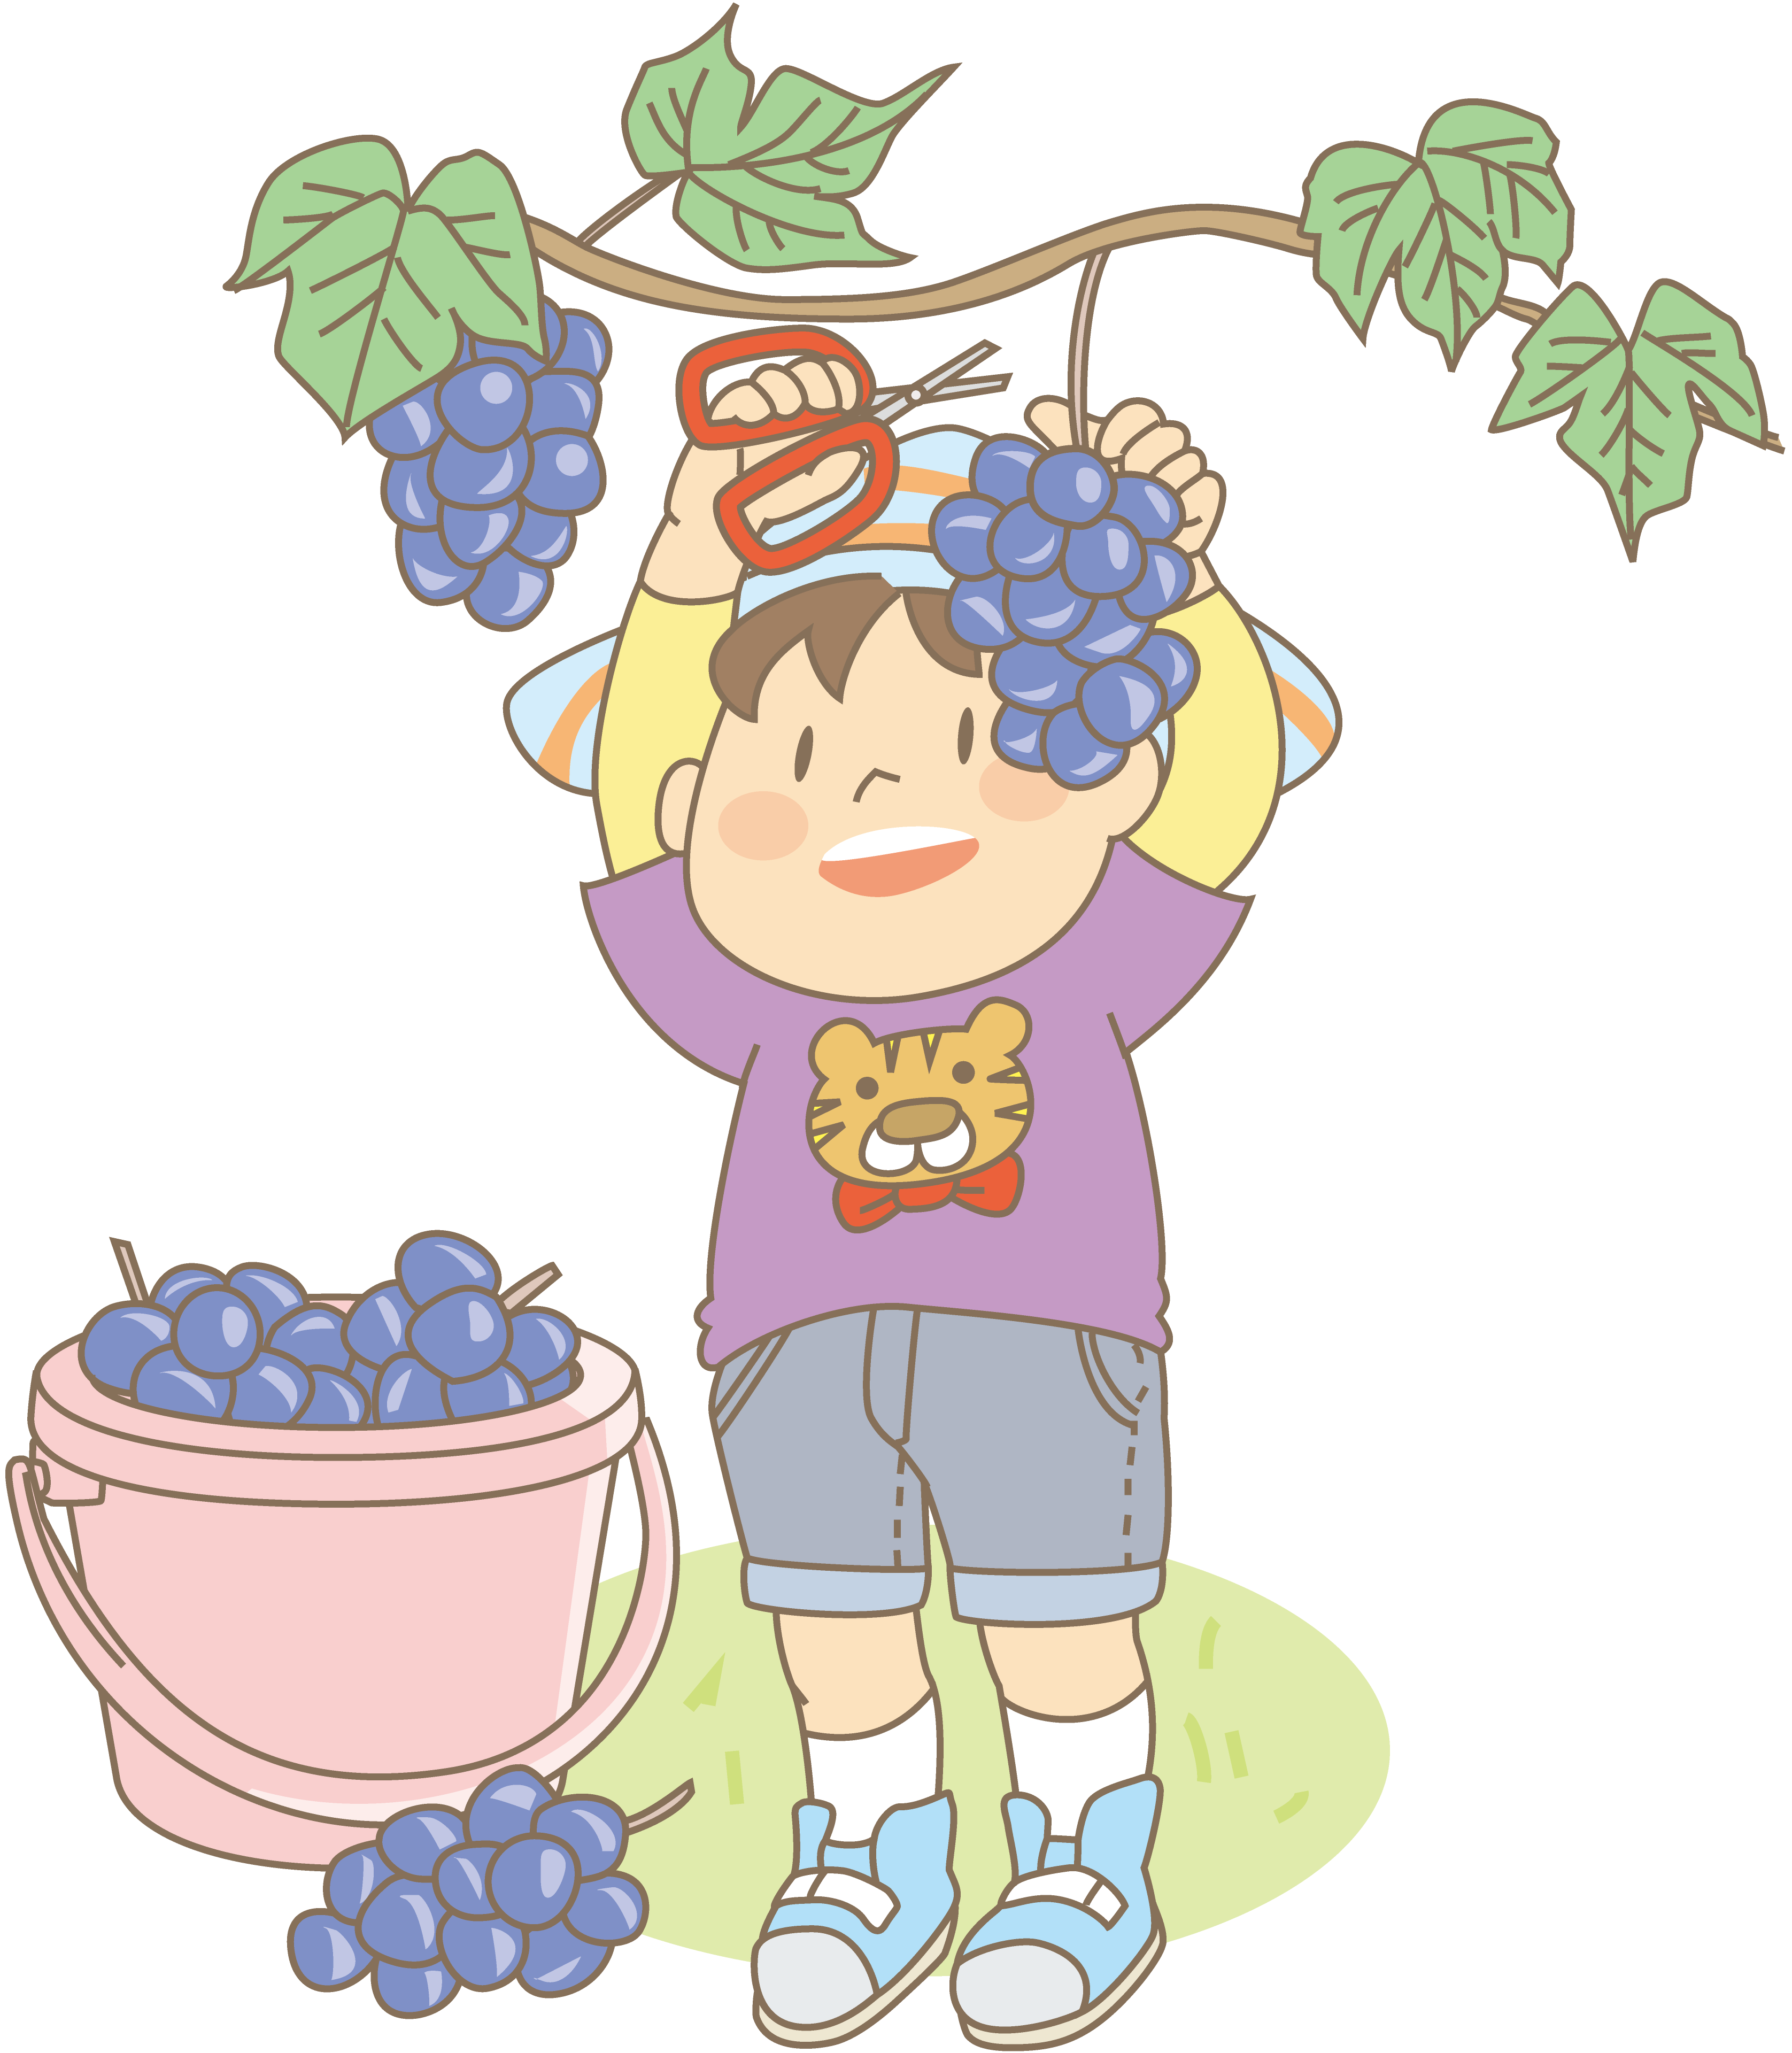 長浜 南浜観光ぶどう園 ブドウ狩りが8月中旬から楽しめます 滋賀のママがイベント 育児 遊び 学びを発信 シガマンマ ピースマム